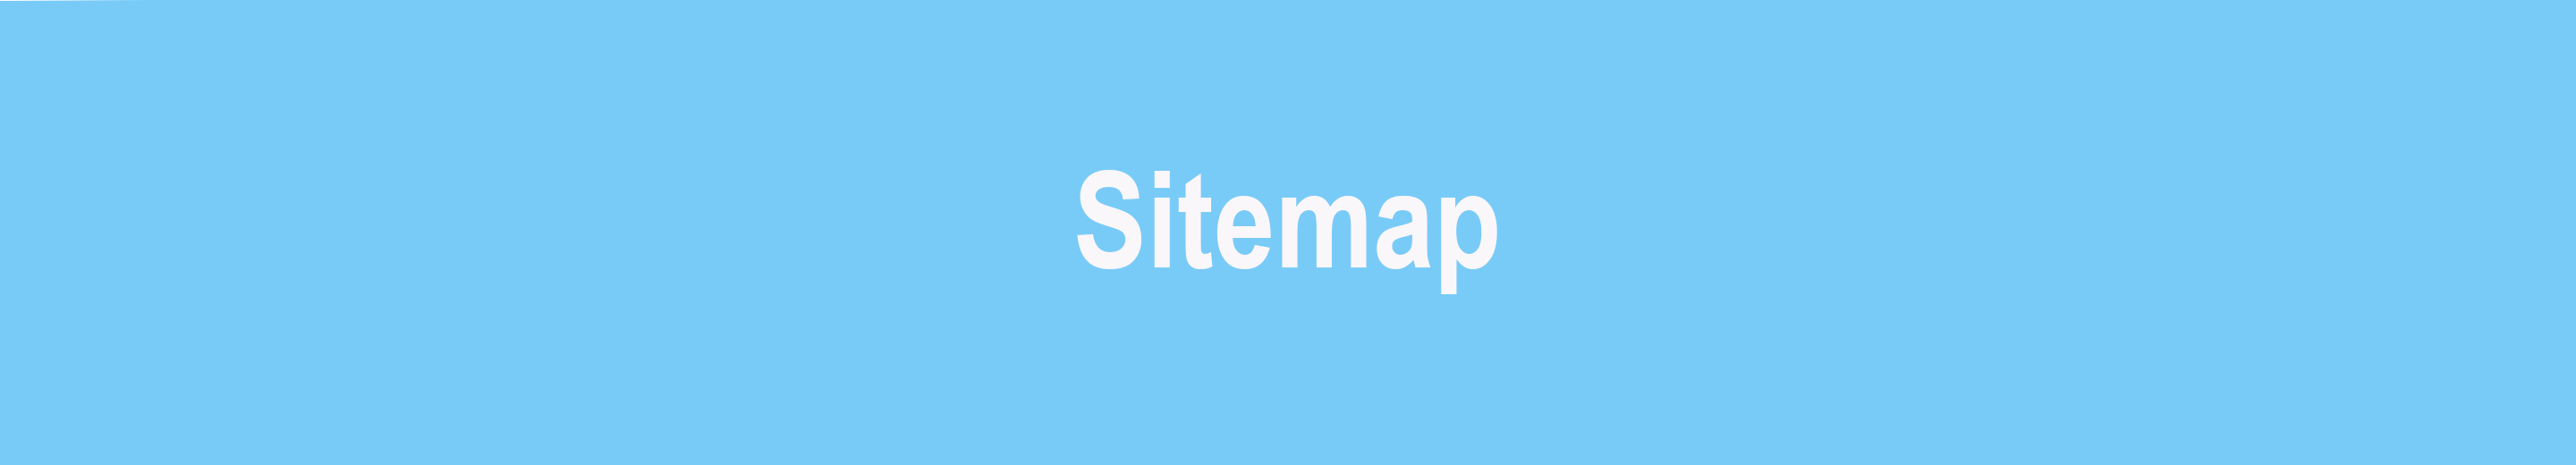 sitemap banner